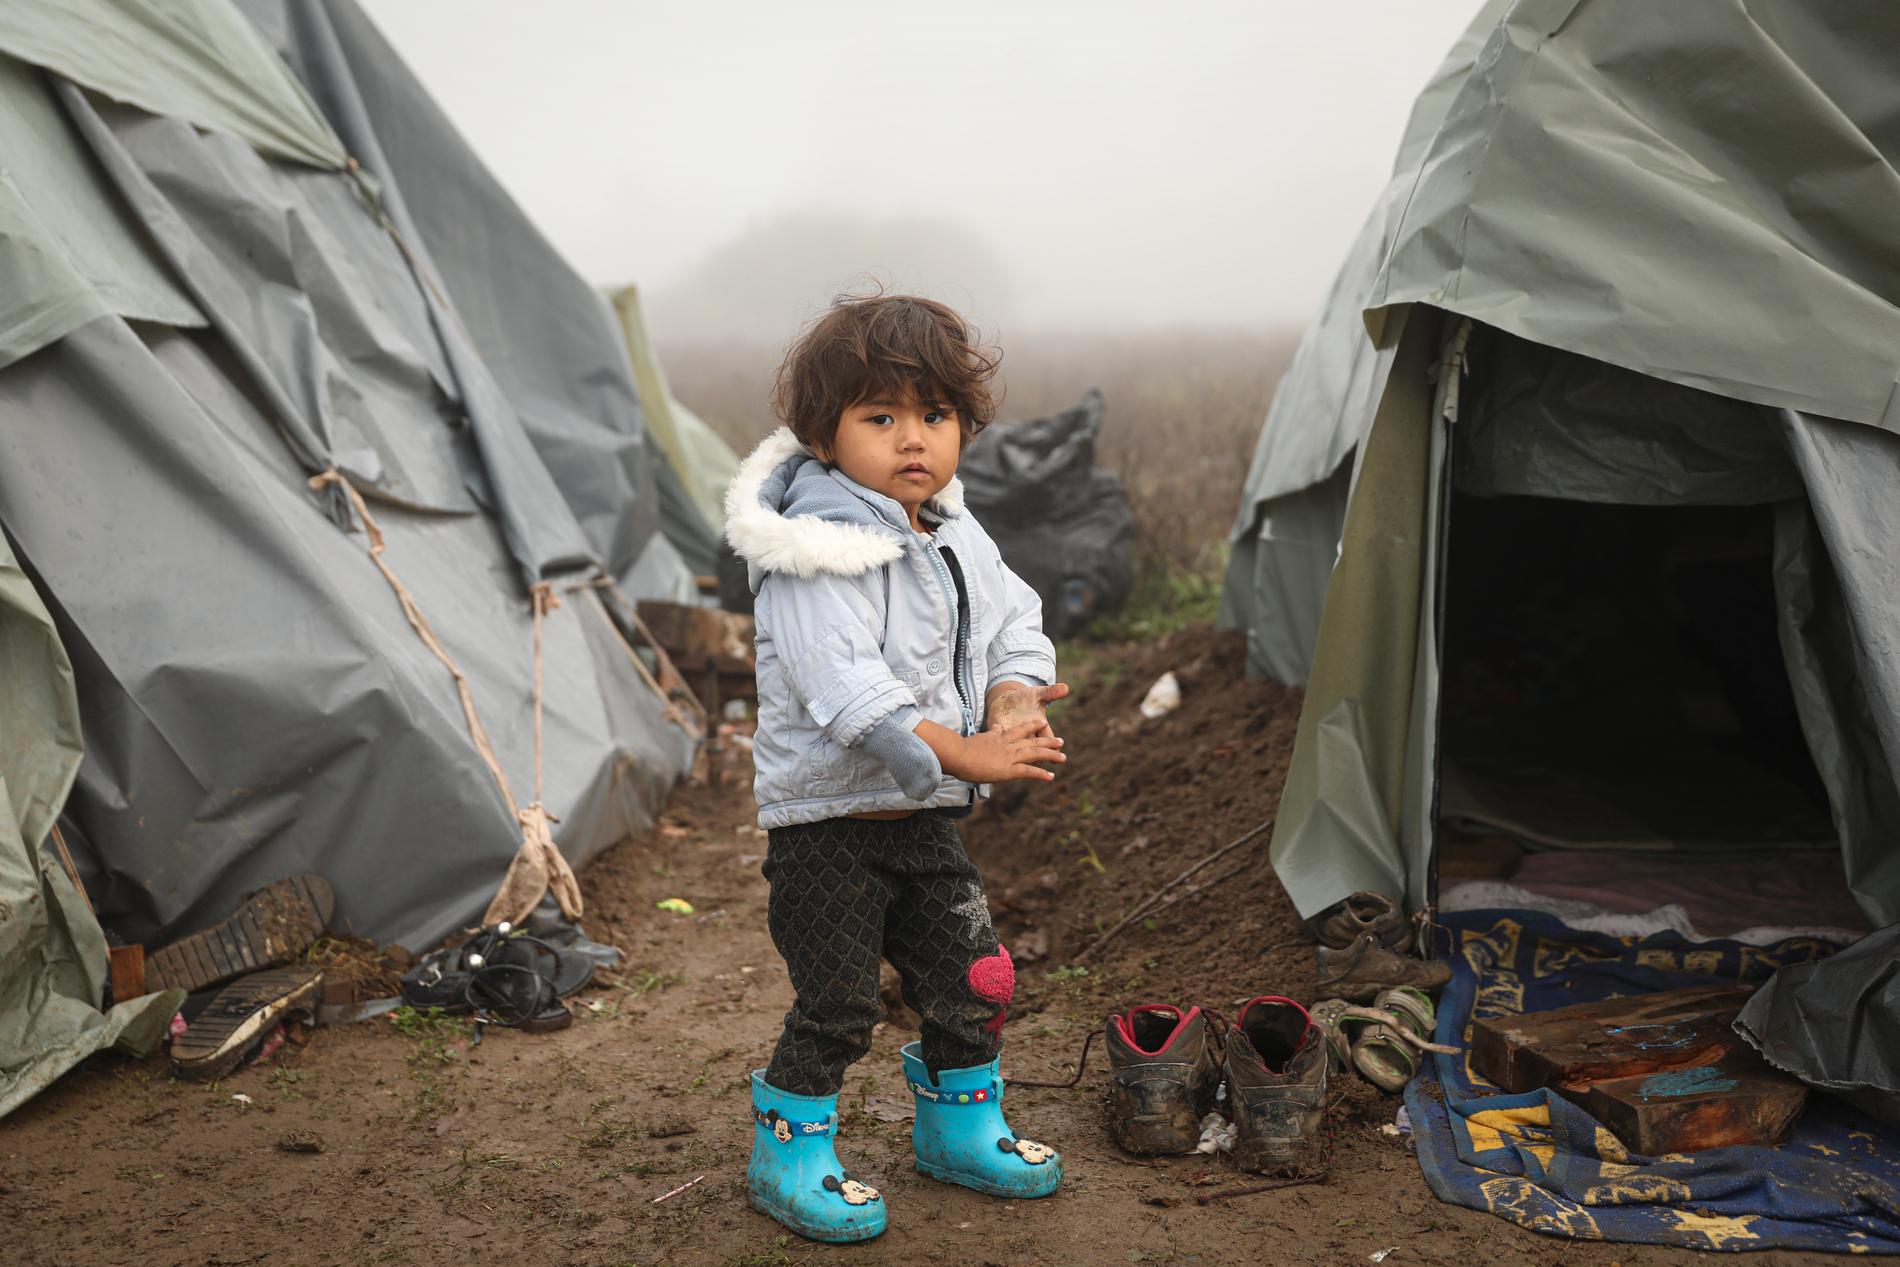 90 prosent av alle som har flyktet fra Afghanistan, lever i nabolandene Pakistan og Iran. Et fåtall, blant dem dette barnet, har tatt seg til Europa og lever nå under svært vanskelige forhold i en provisorisk leir i Bosnia. 